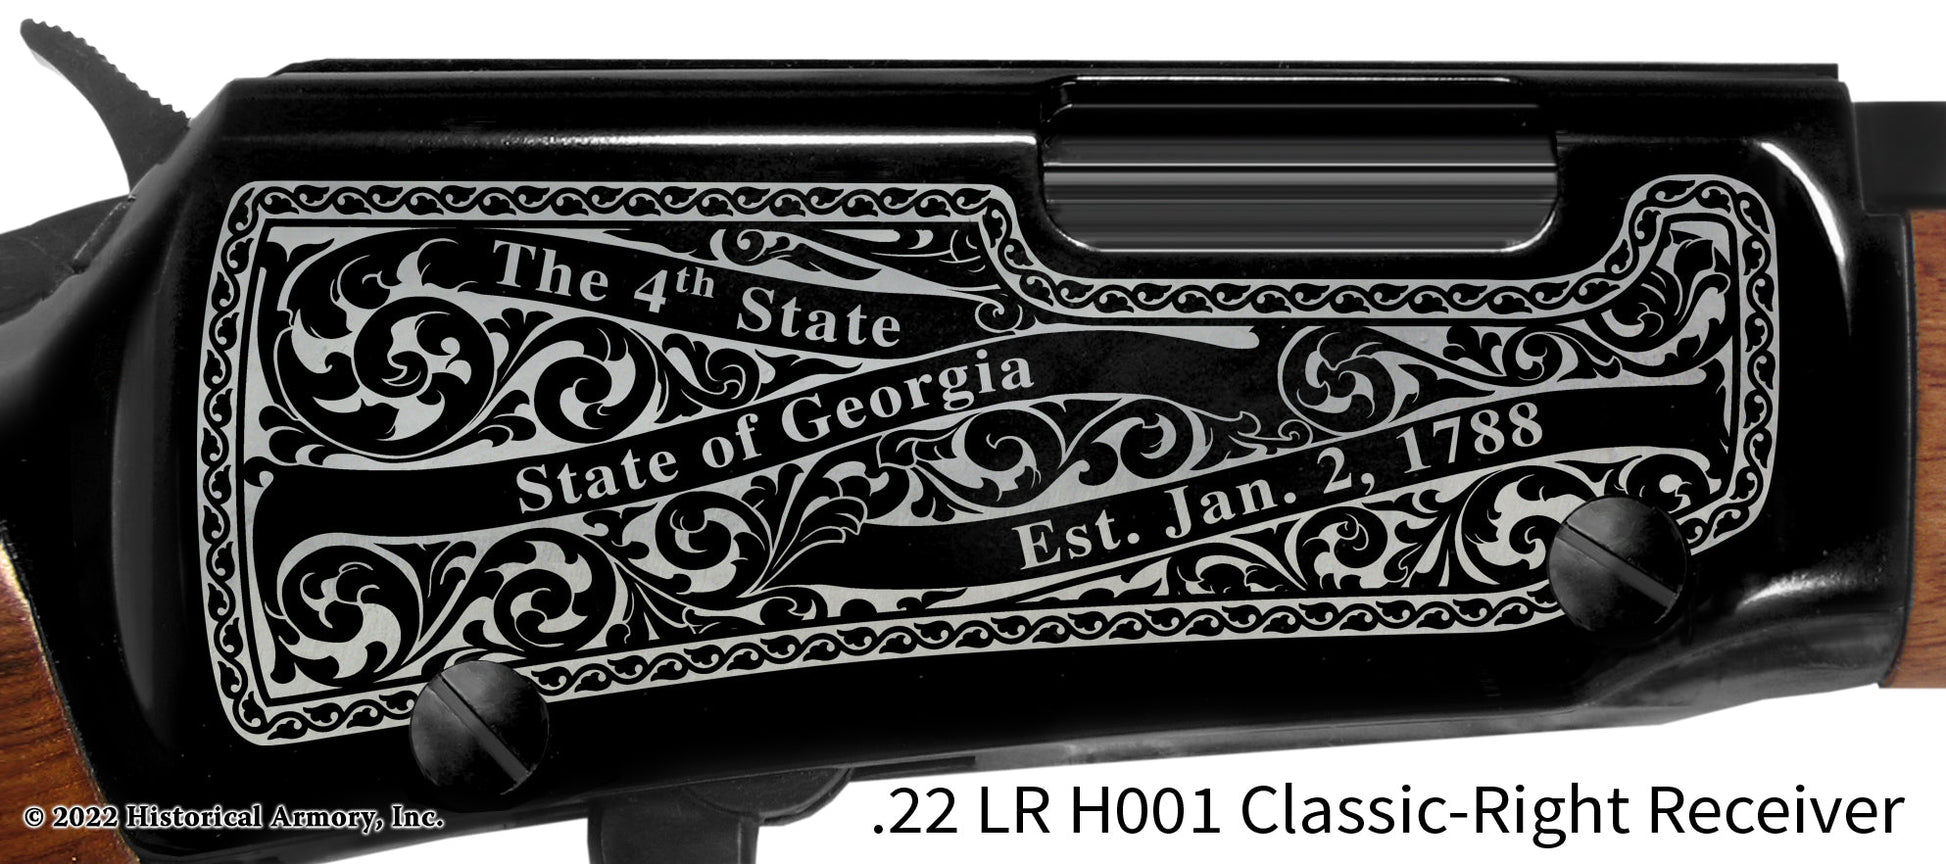 Oglethorpe County Georgia Engraved Henry H001 Rifle